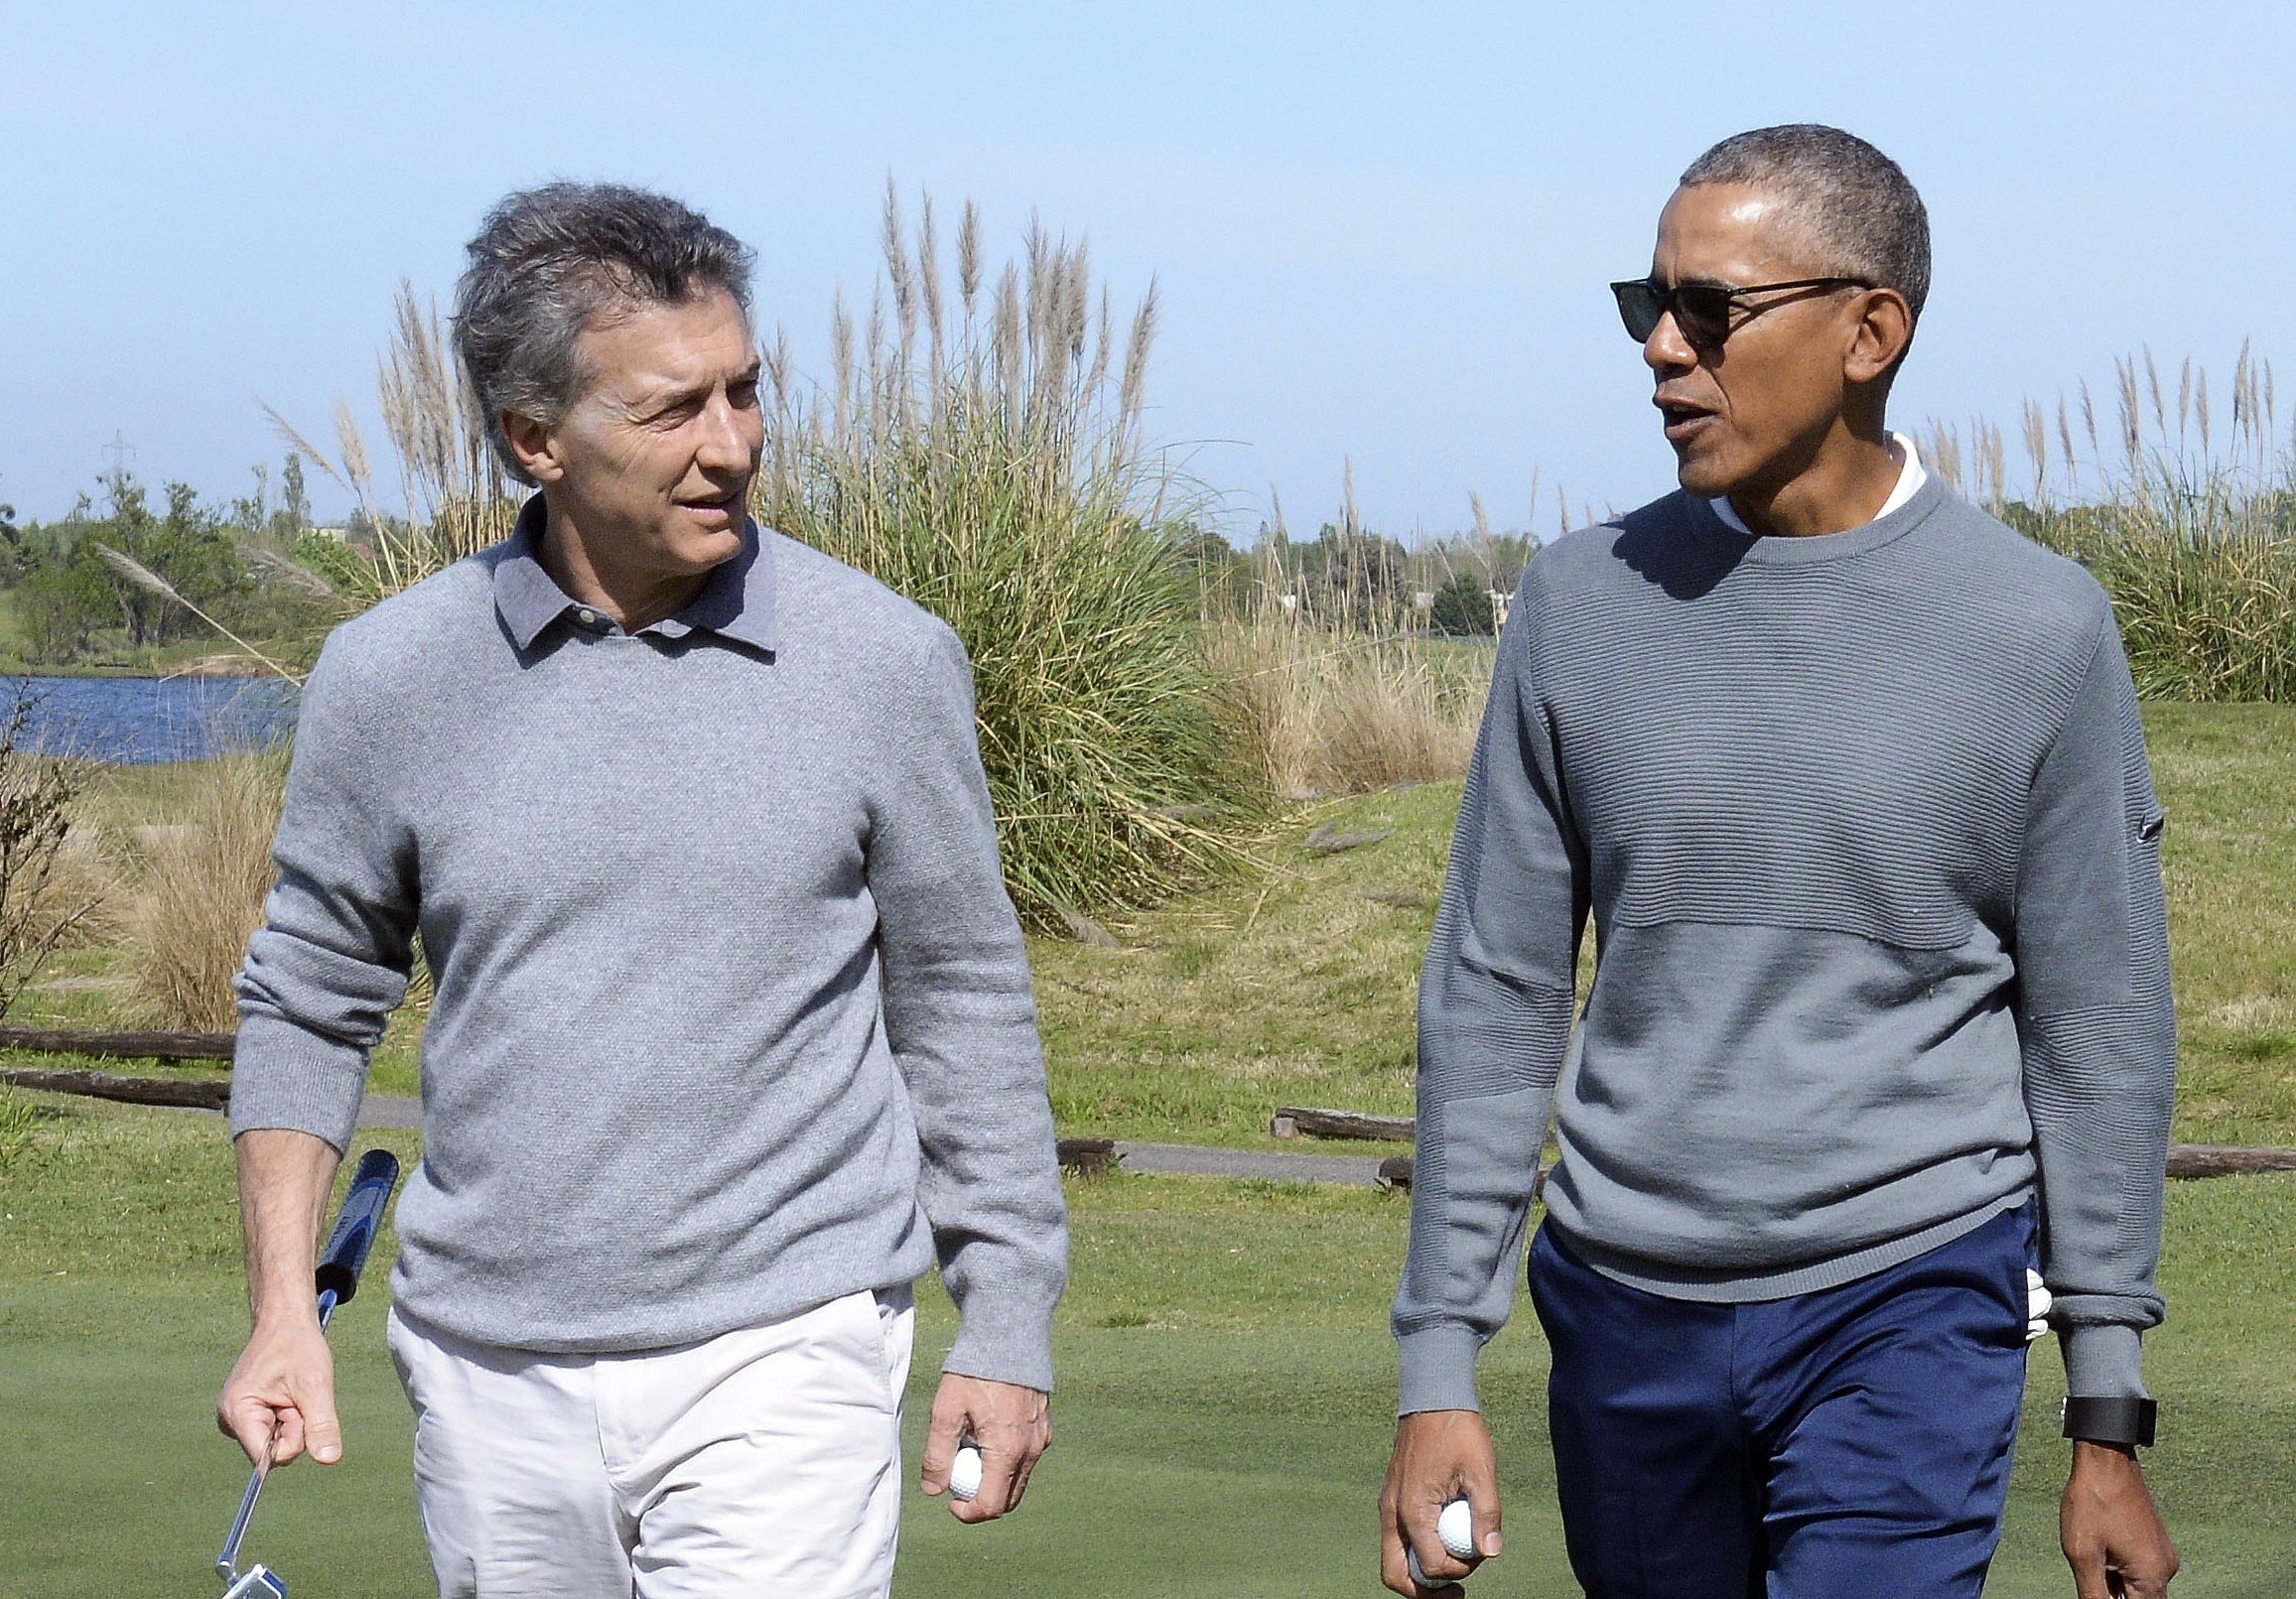 Бившият президент на САЩ Барак Обама беседва с президента на Аржентина Маурицио Макри по време на игра на голф